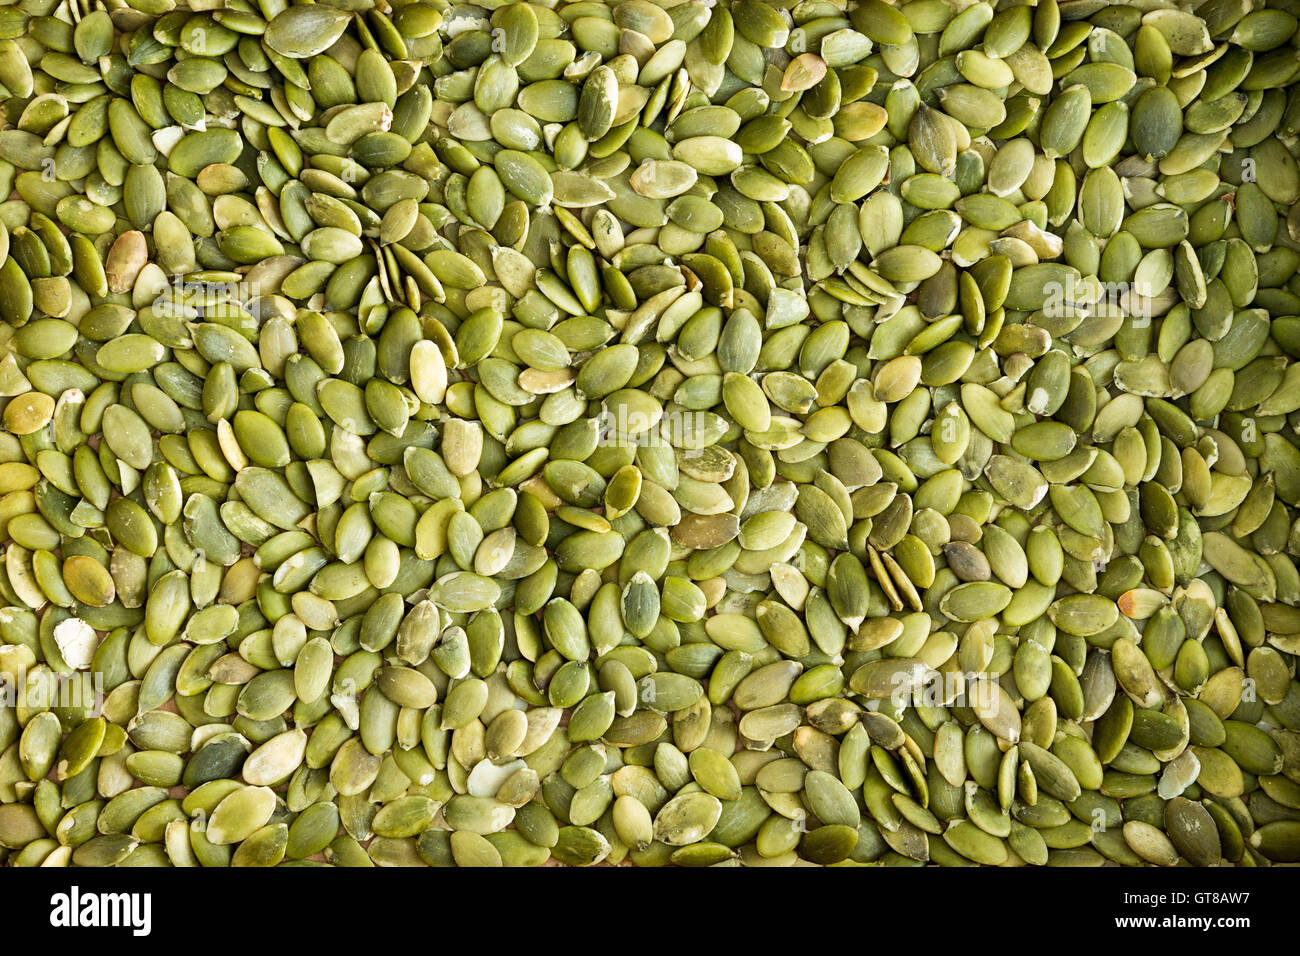 La texture de fond vert frais sain de-riz décortiqué les graines de citrouille un snack populaire et en salade riche en protéine et nutri Banque D'Images